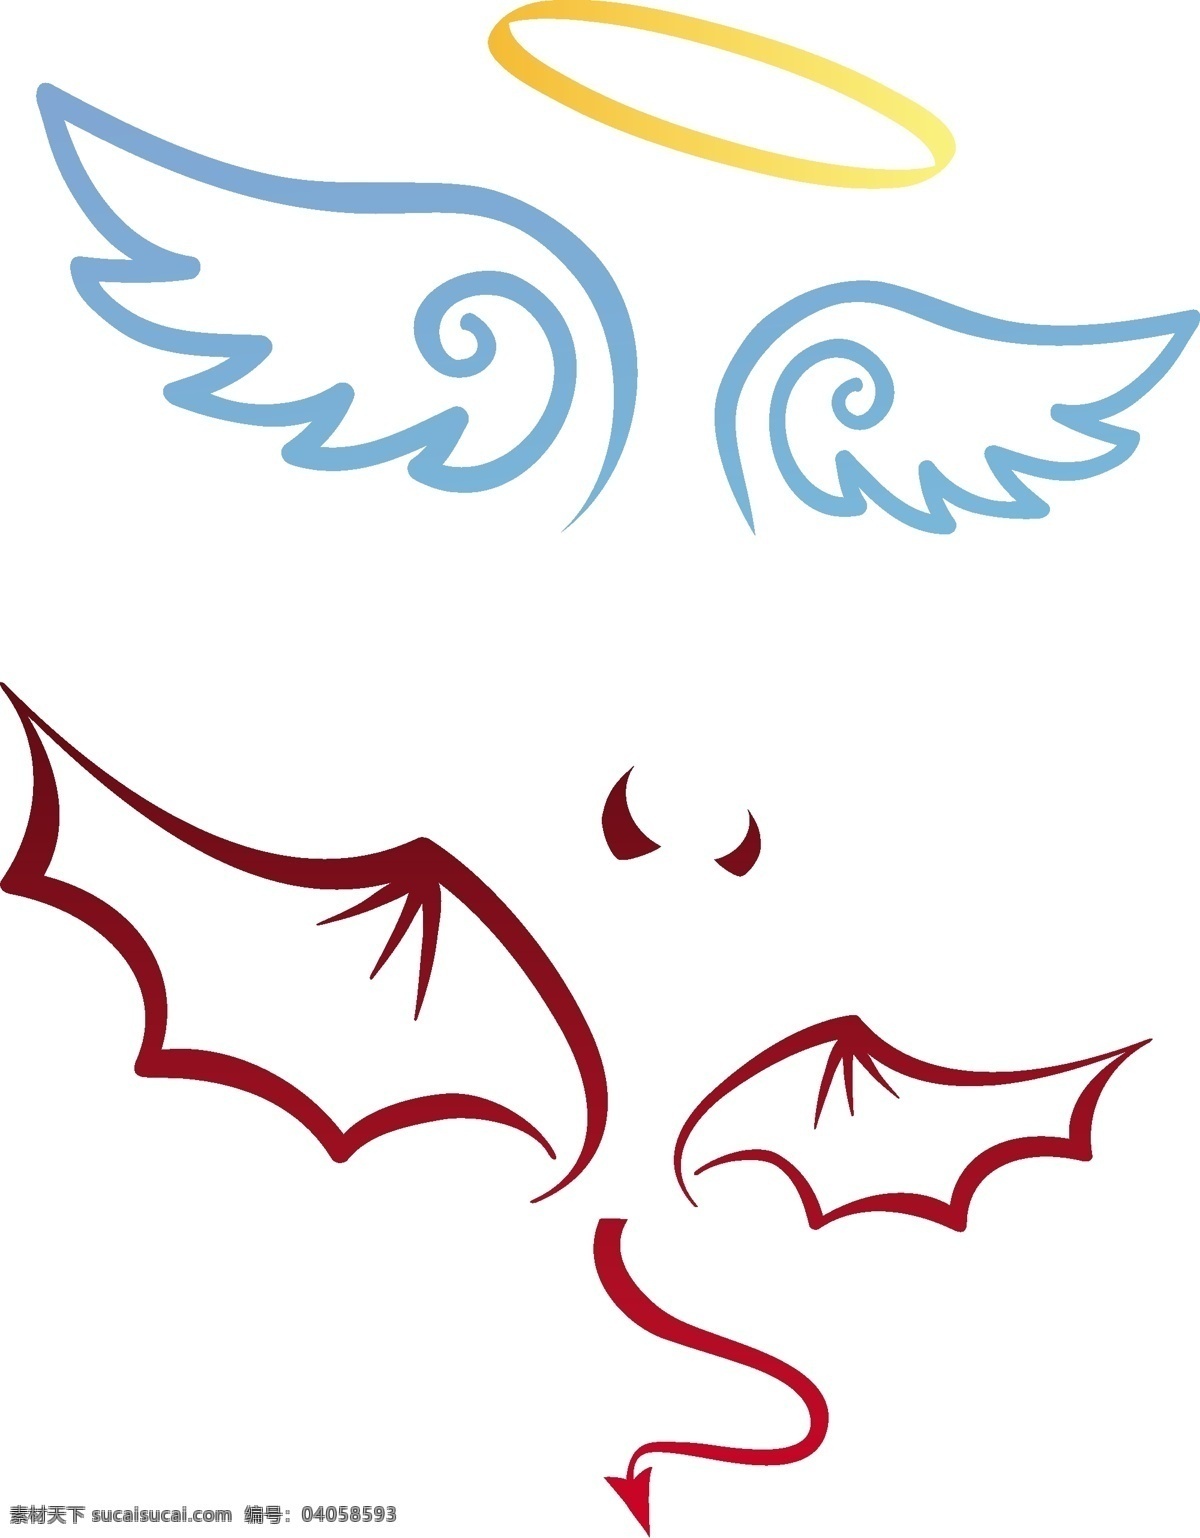 天使 魔鬼 翅膀 矢量 可爱 矢量素材 卡通 矢量图